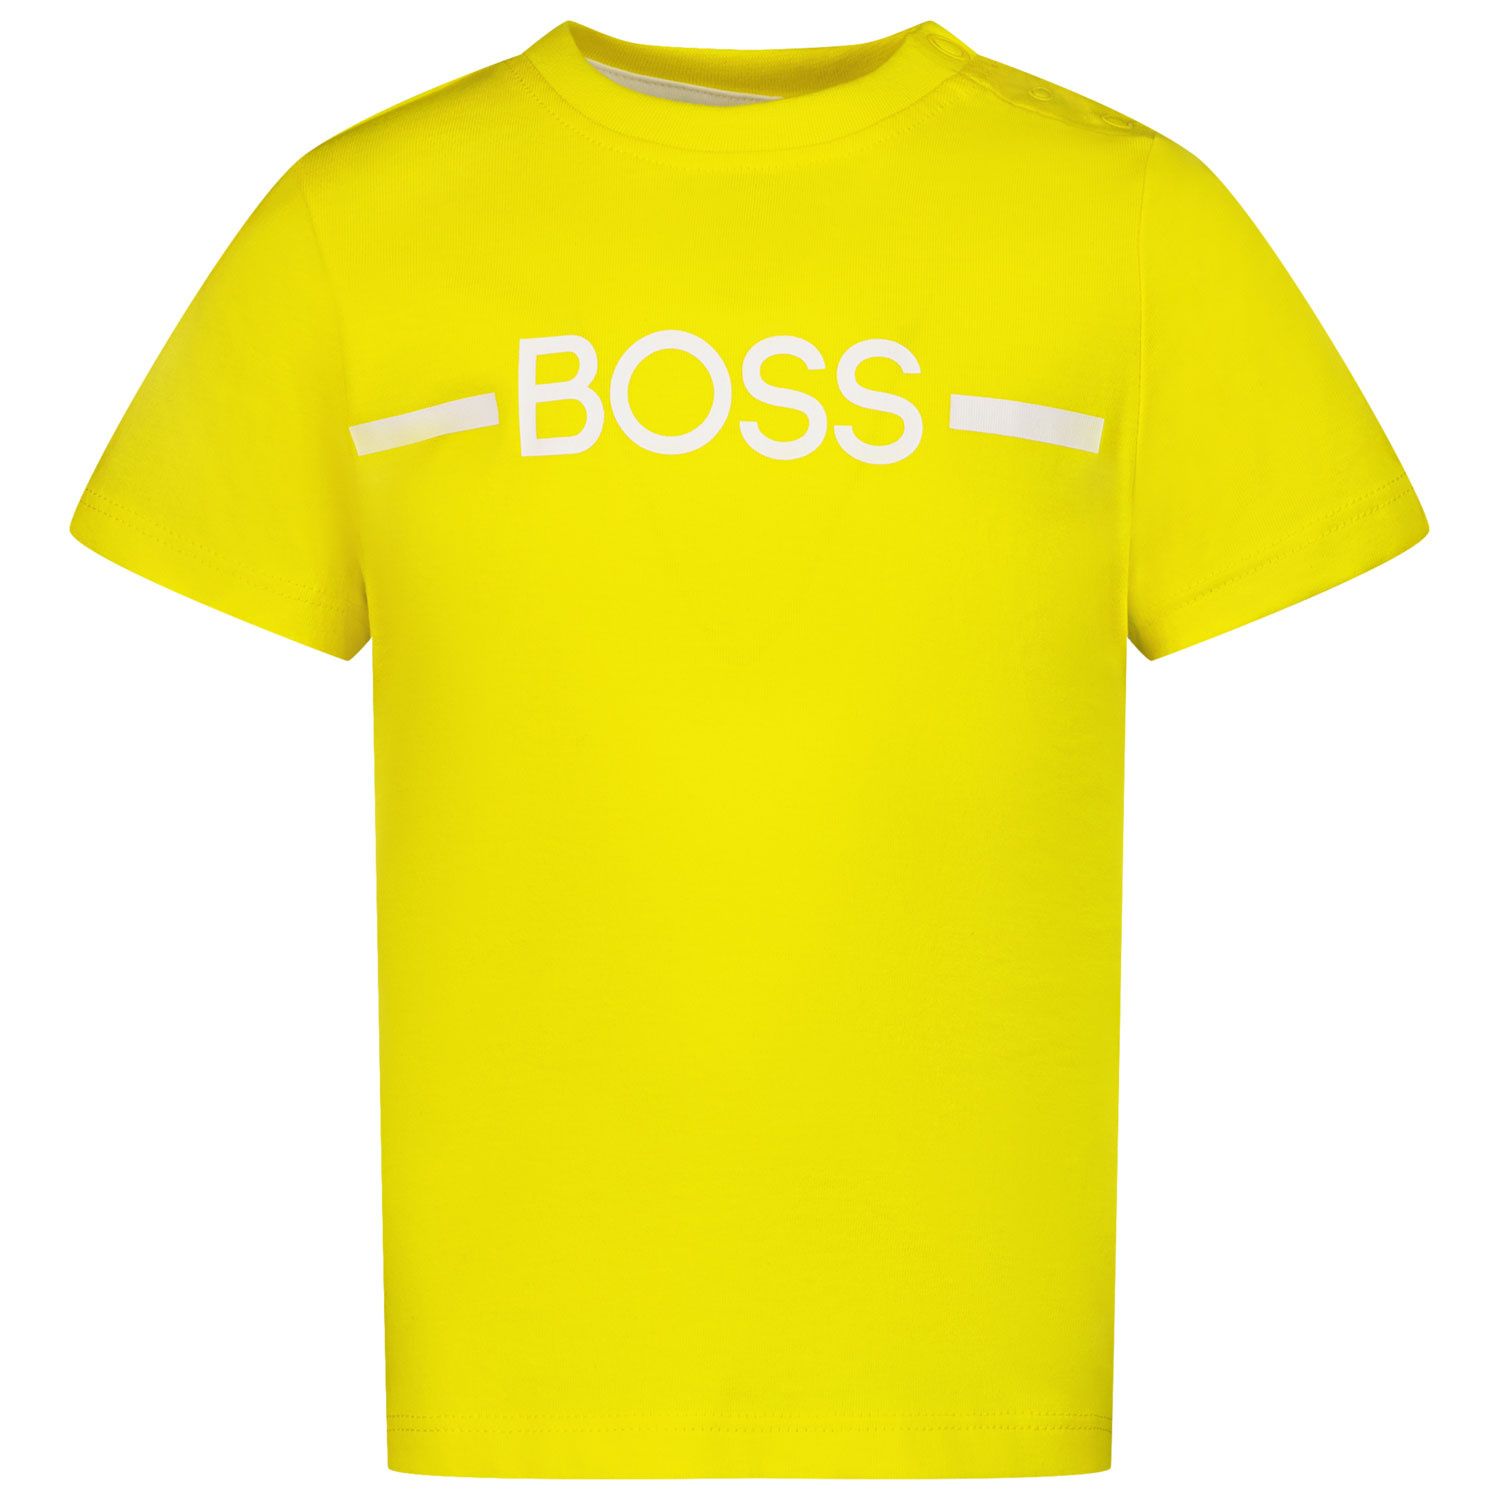 Afbeelding van Boss J05908 baby t-shirt geel